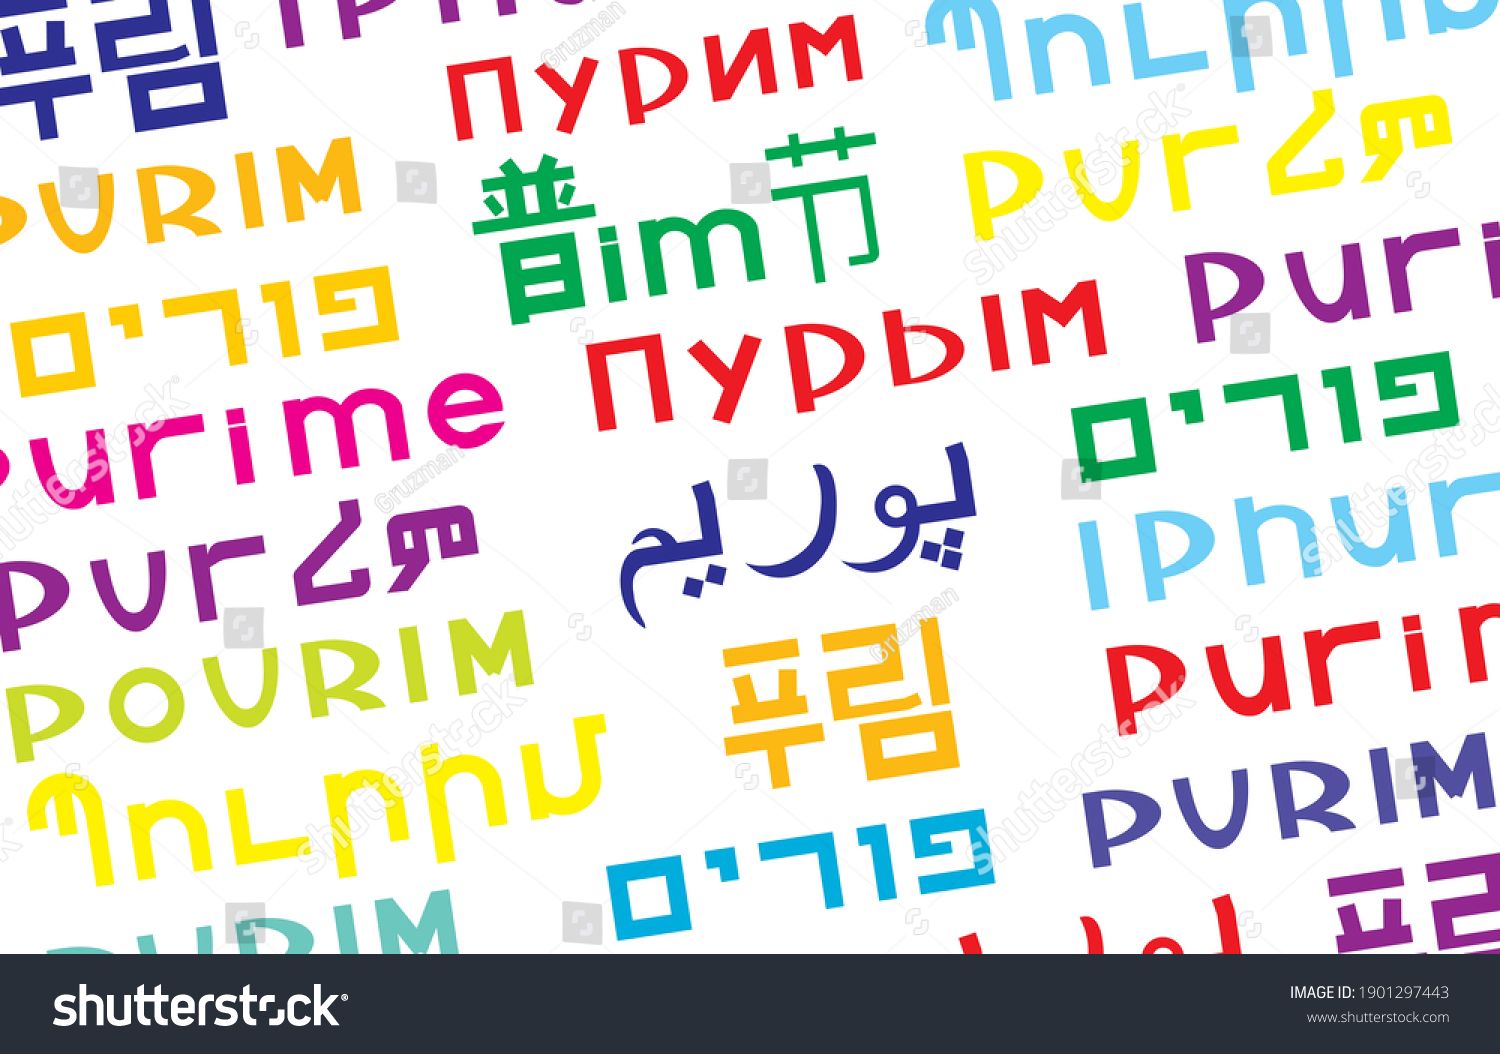 פורים בכל השפות המילה פורים במגוון שפות -1901297443.jpg